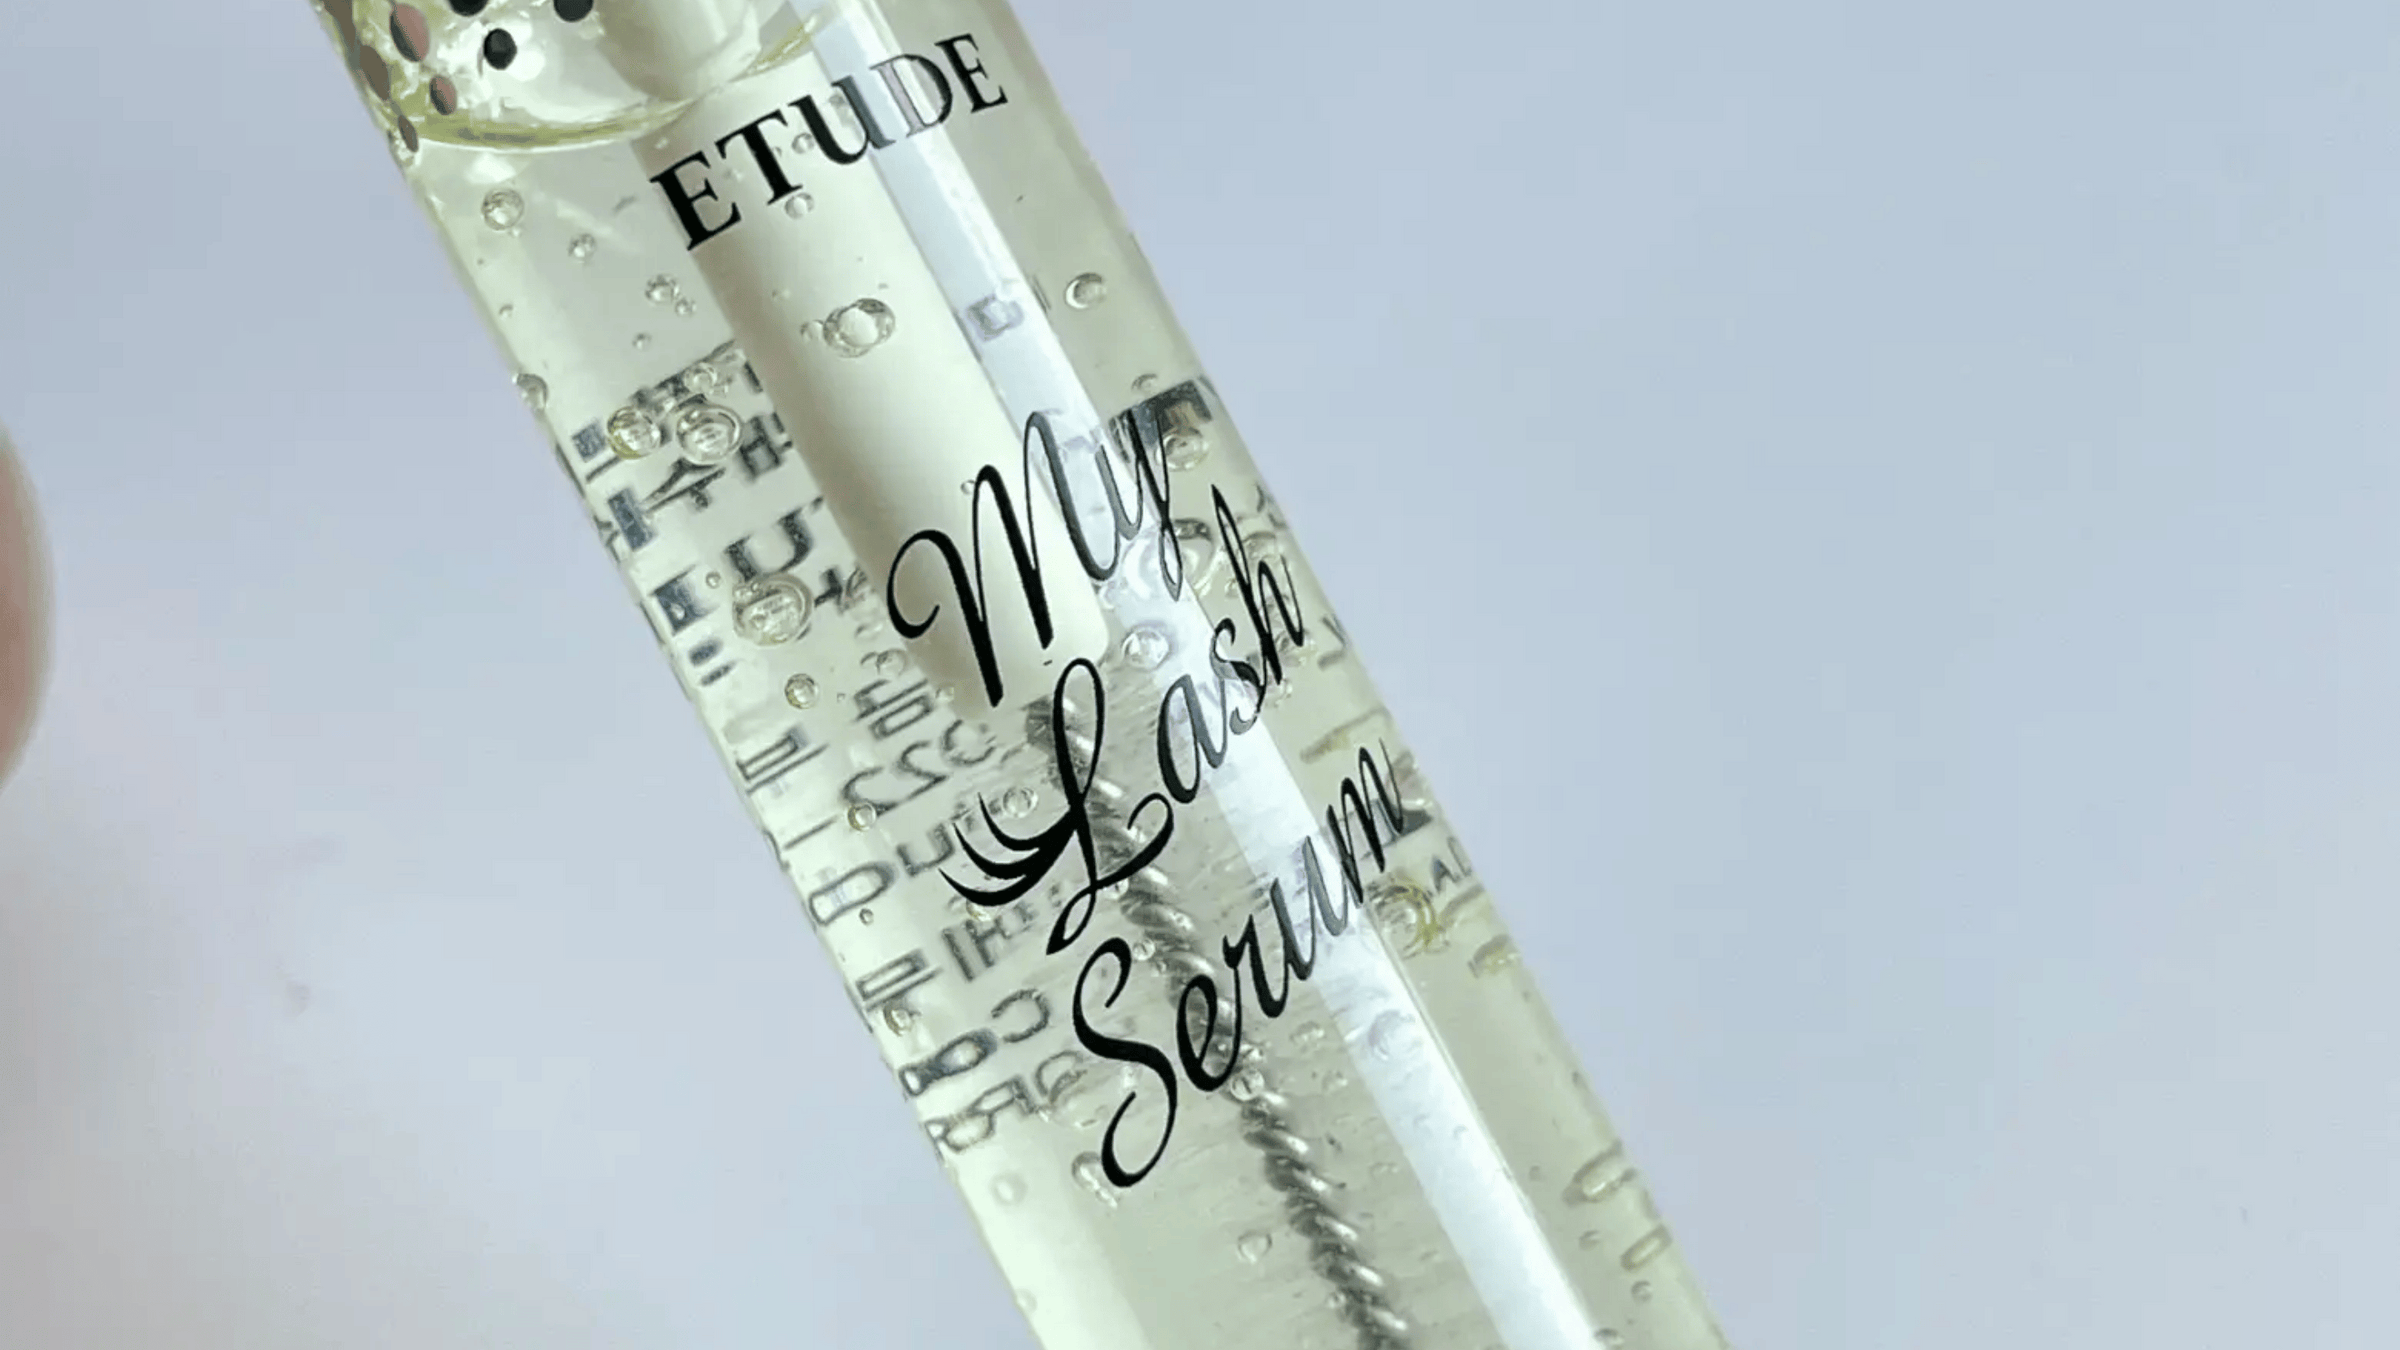 Bilden visar Etudes "My Lash Serum" i en genomskinlig flaska. Den klara vätskan med bubblor ger ett estetiskt intryck. Produkten är avsedd för ögonfransarnas hälsa och tillväxt.